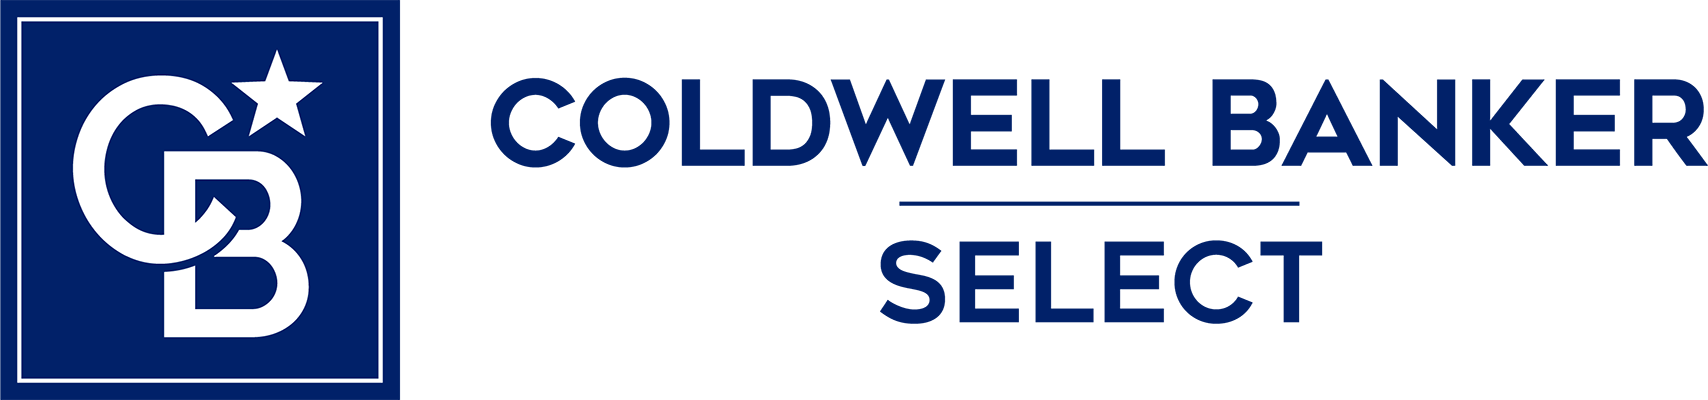 Maira Chupp - Coldwell Banker Select Logo